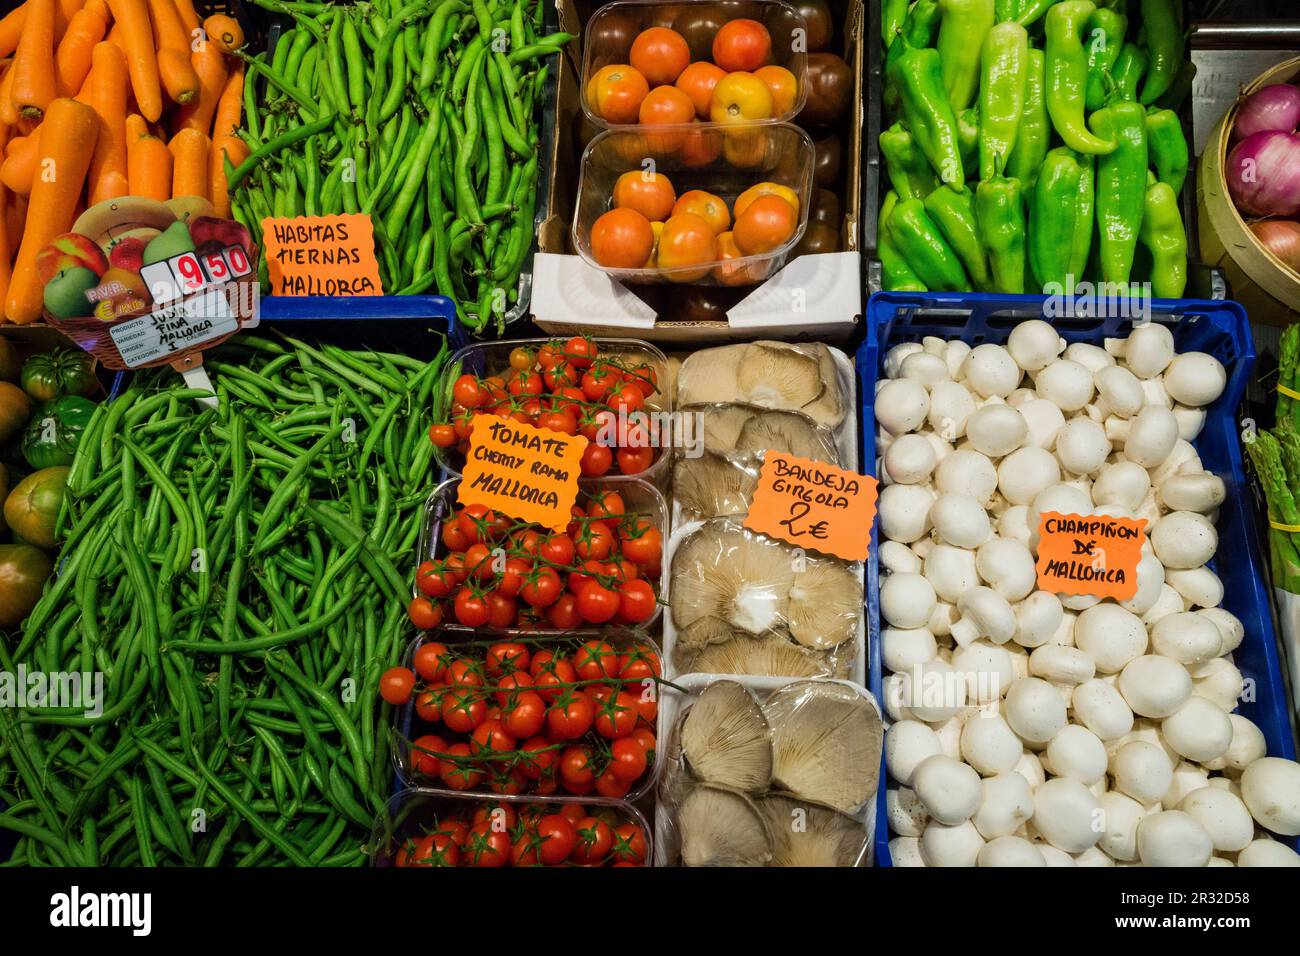 productos de baleares, frutas y verduras Miquel Gelabert , Palma, Mallorca,Islas Baleares, Spain. Stock Photo